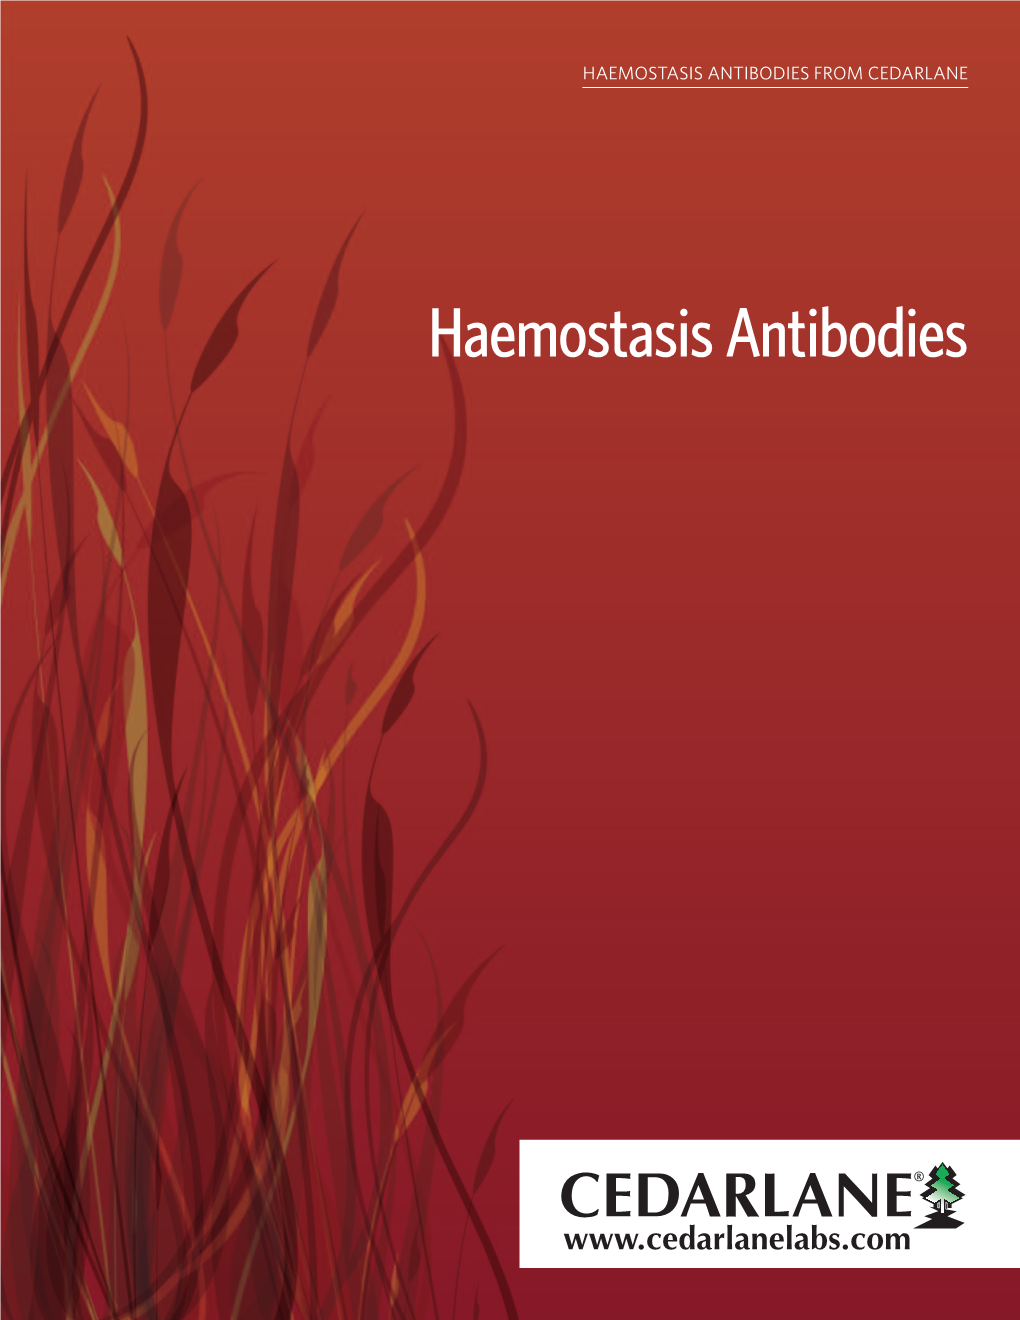 Haemostasis Antibodies from Cedarlane